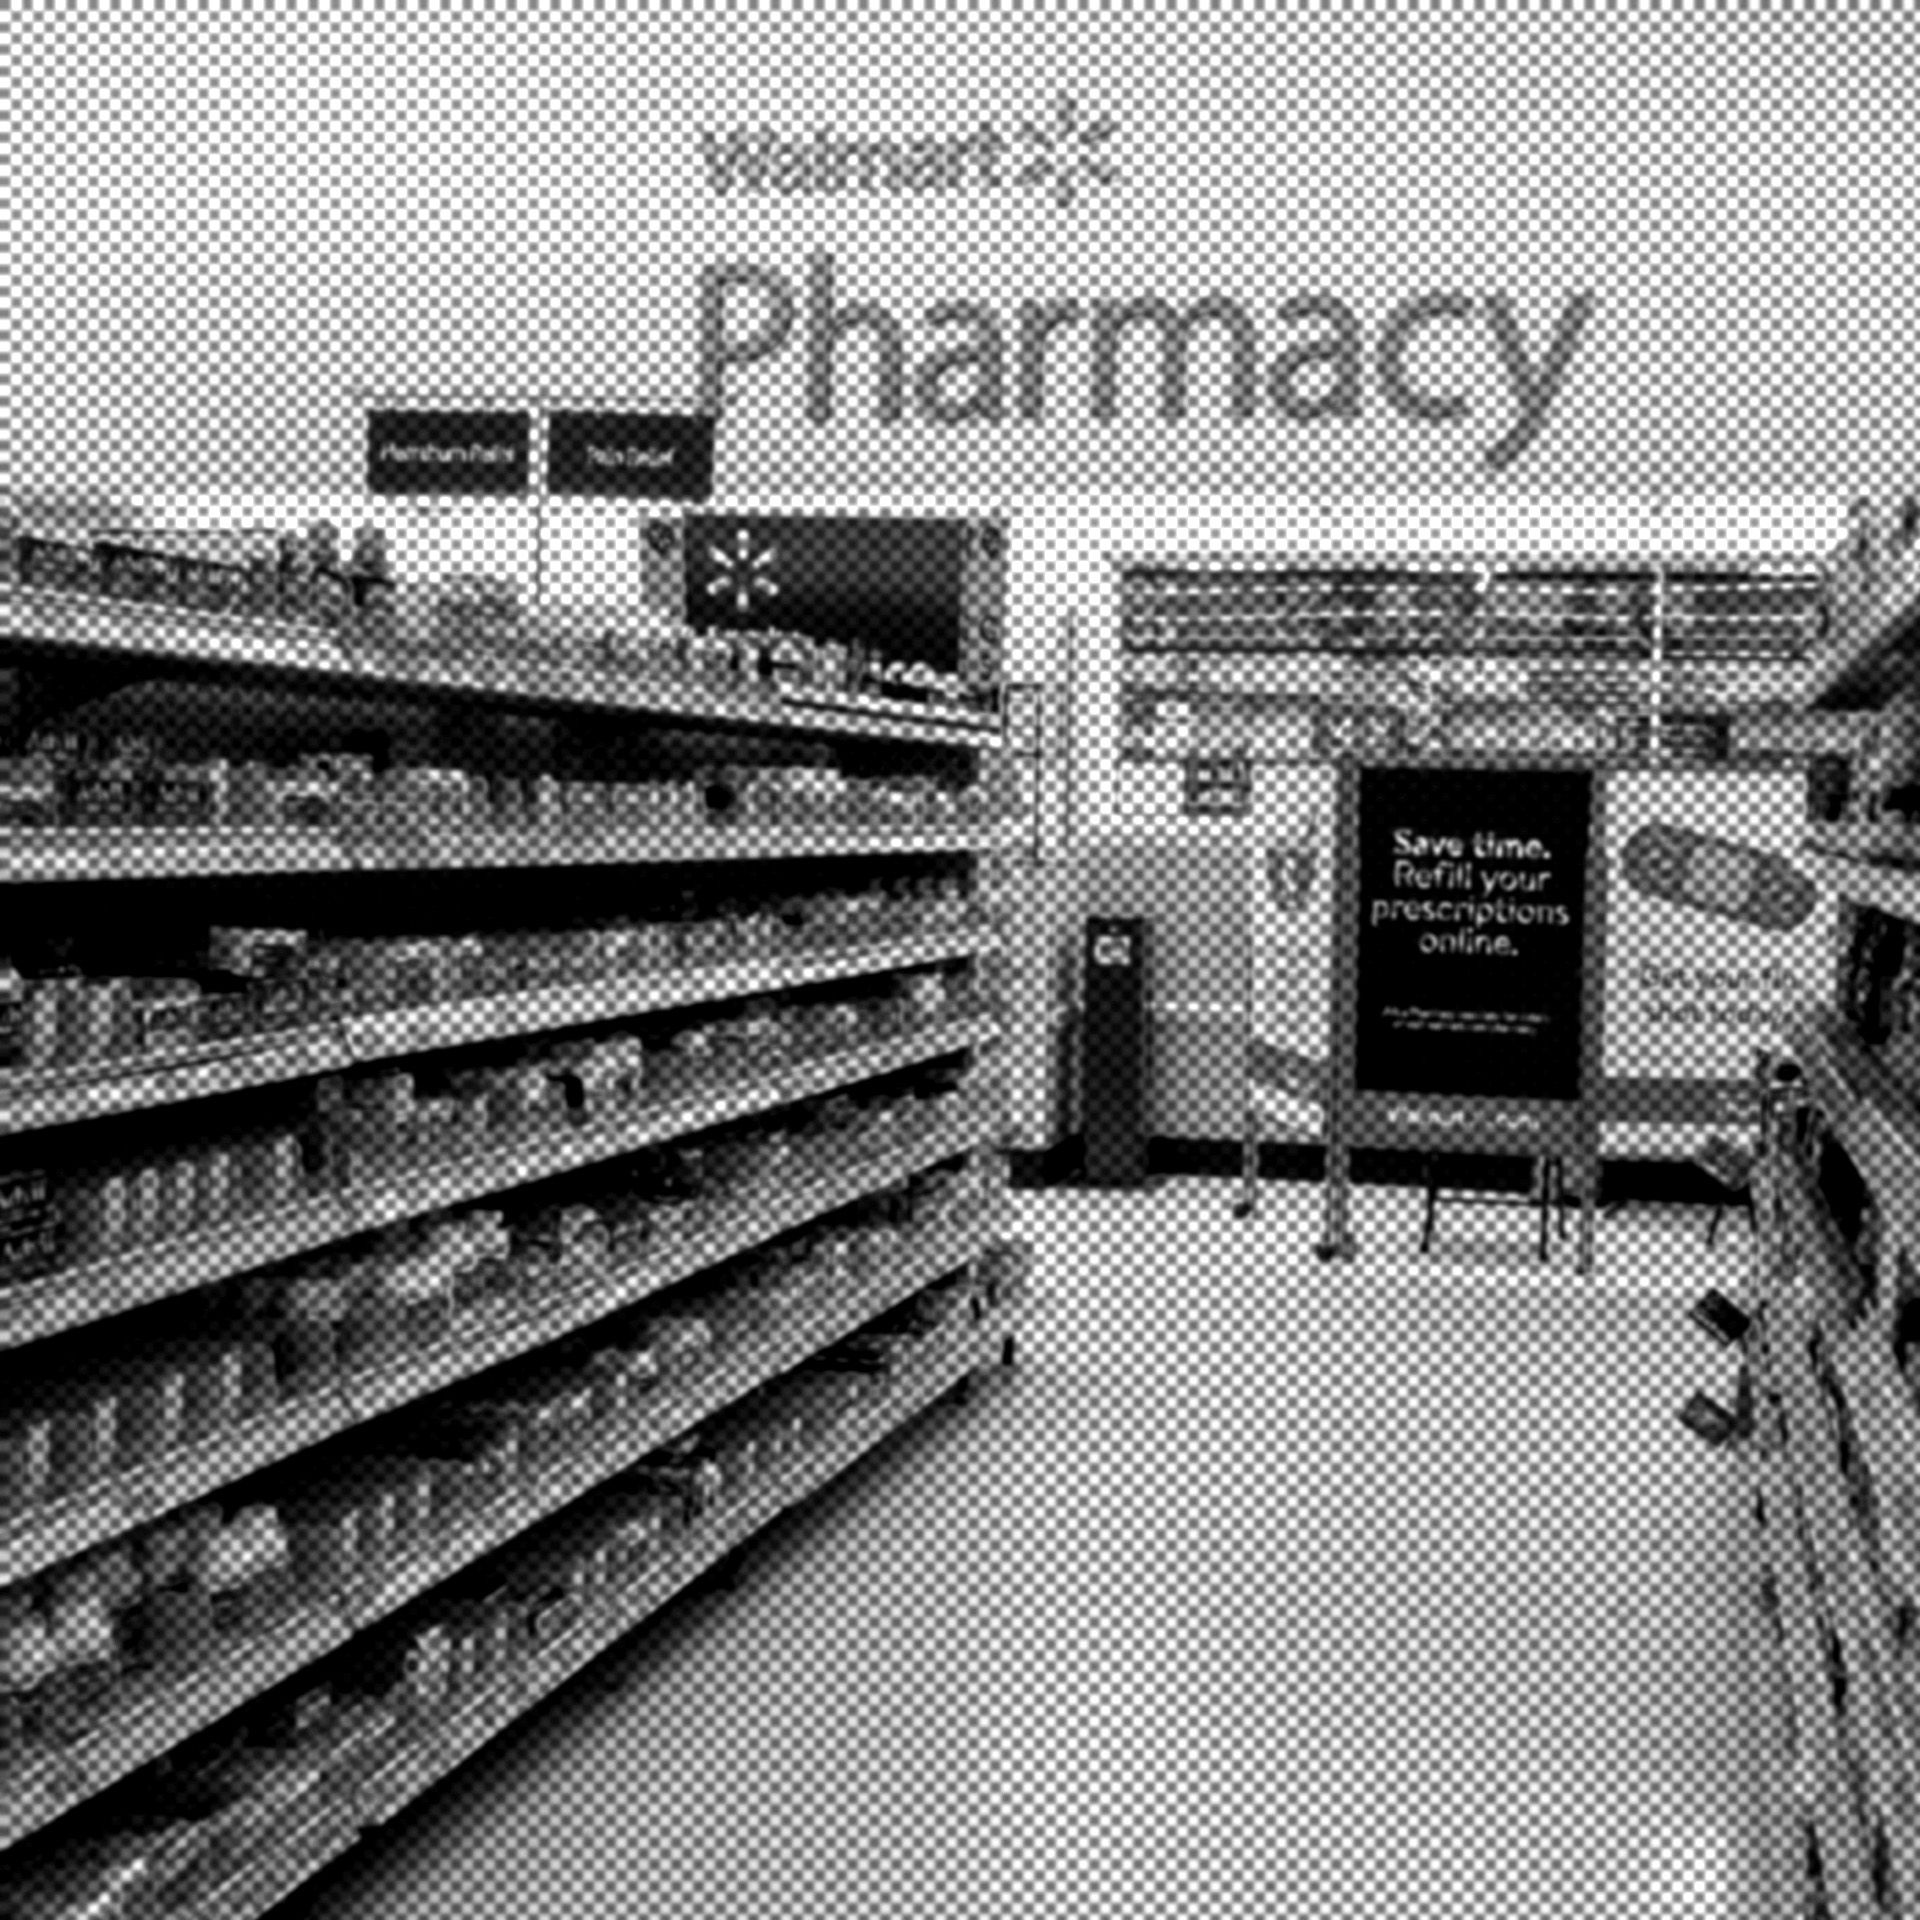 Walmart_Pharmacy_Filter.jpg